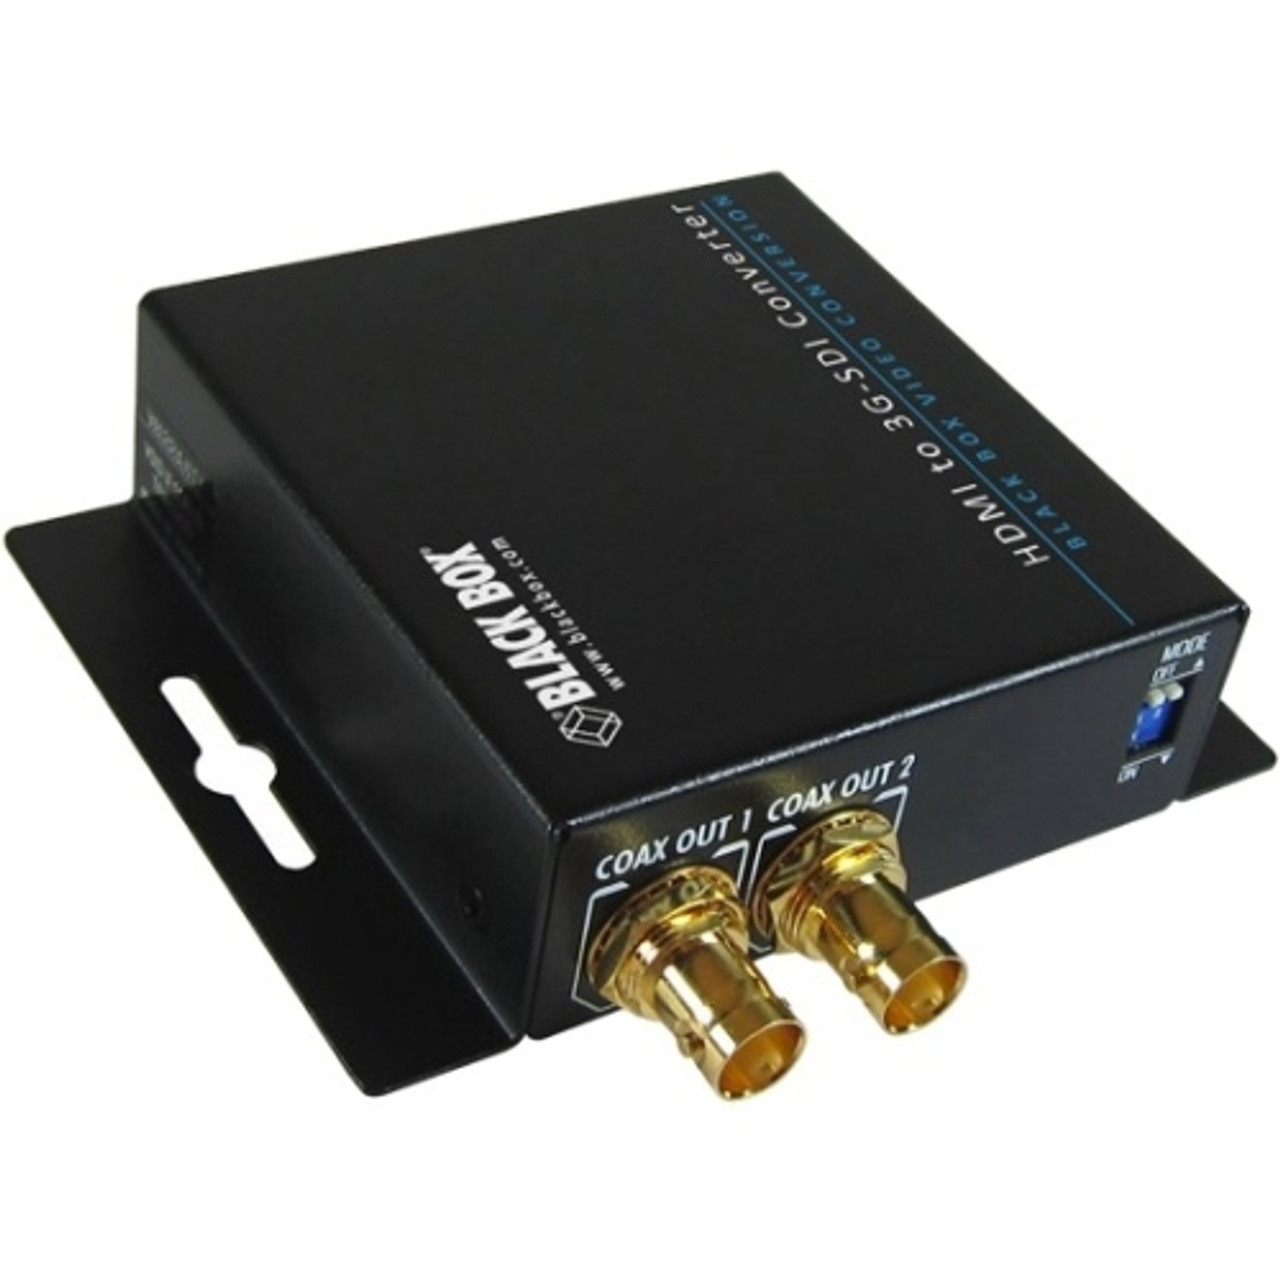 VSC-HDMI-SDI Black Box HDMI to 3G-SDI/HD-SDI Converter